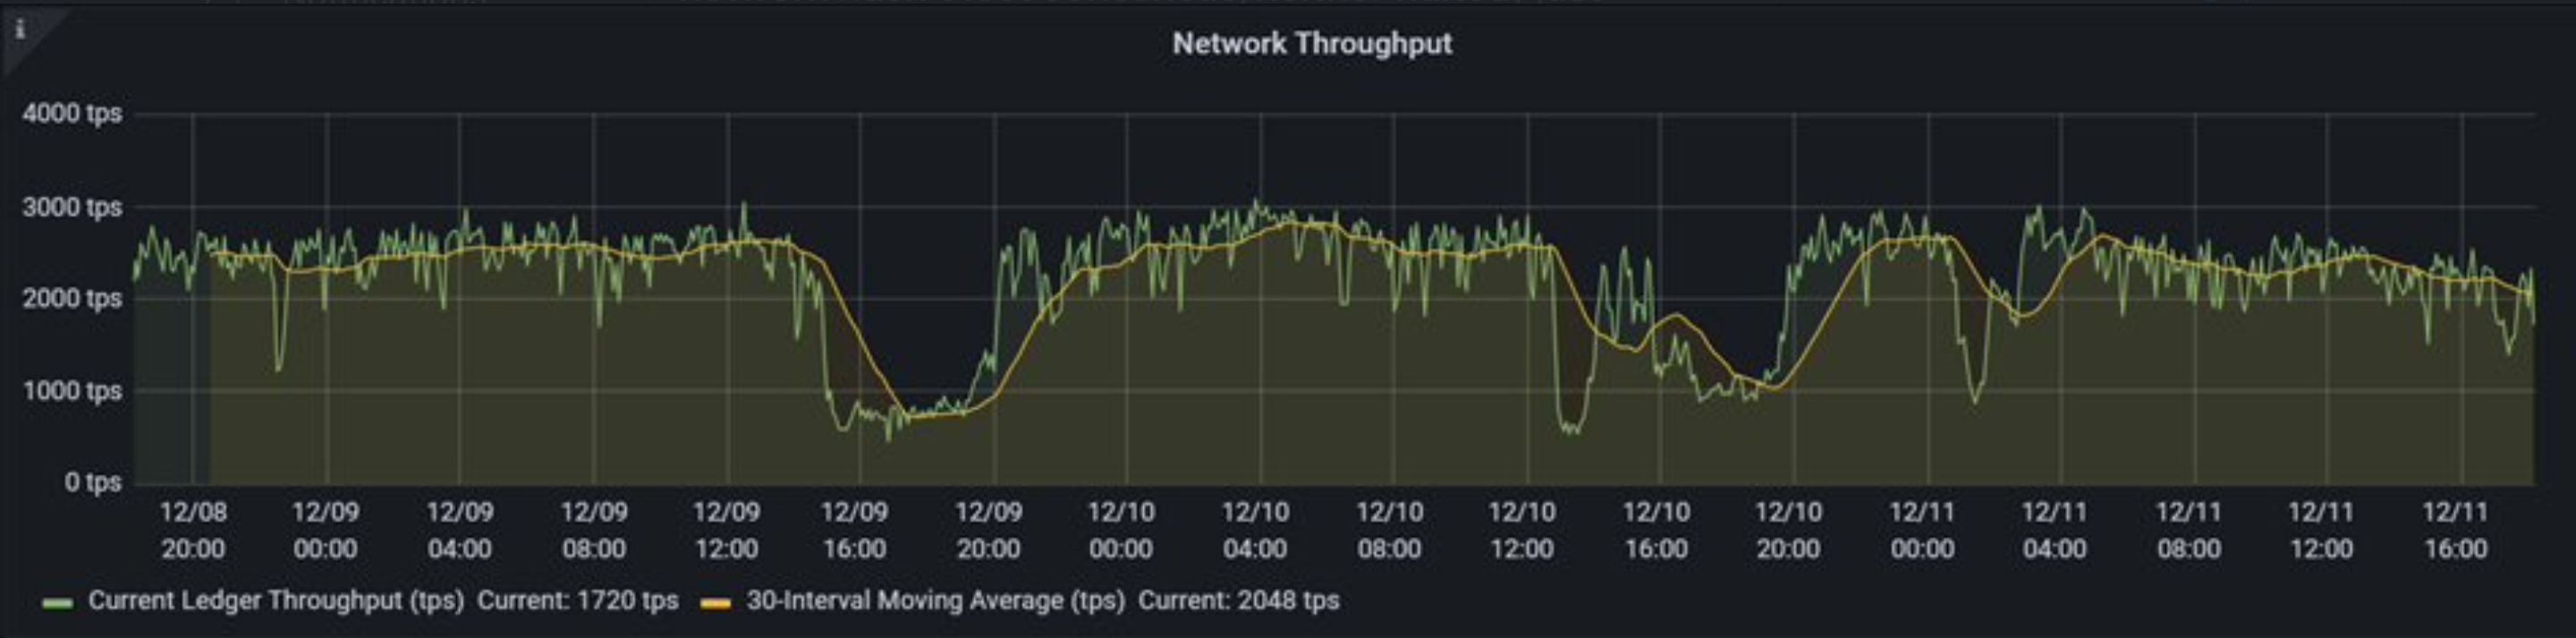 Analista: La razón detrás de la ralentización de la red de Solana no es un ataque DDoS, sino ...